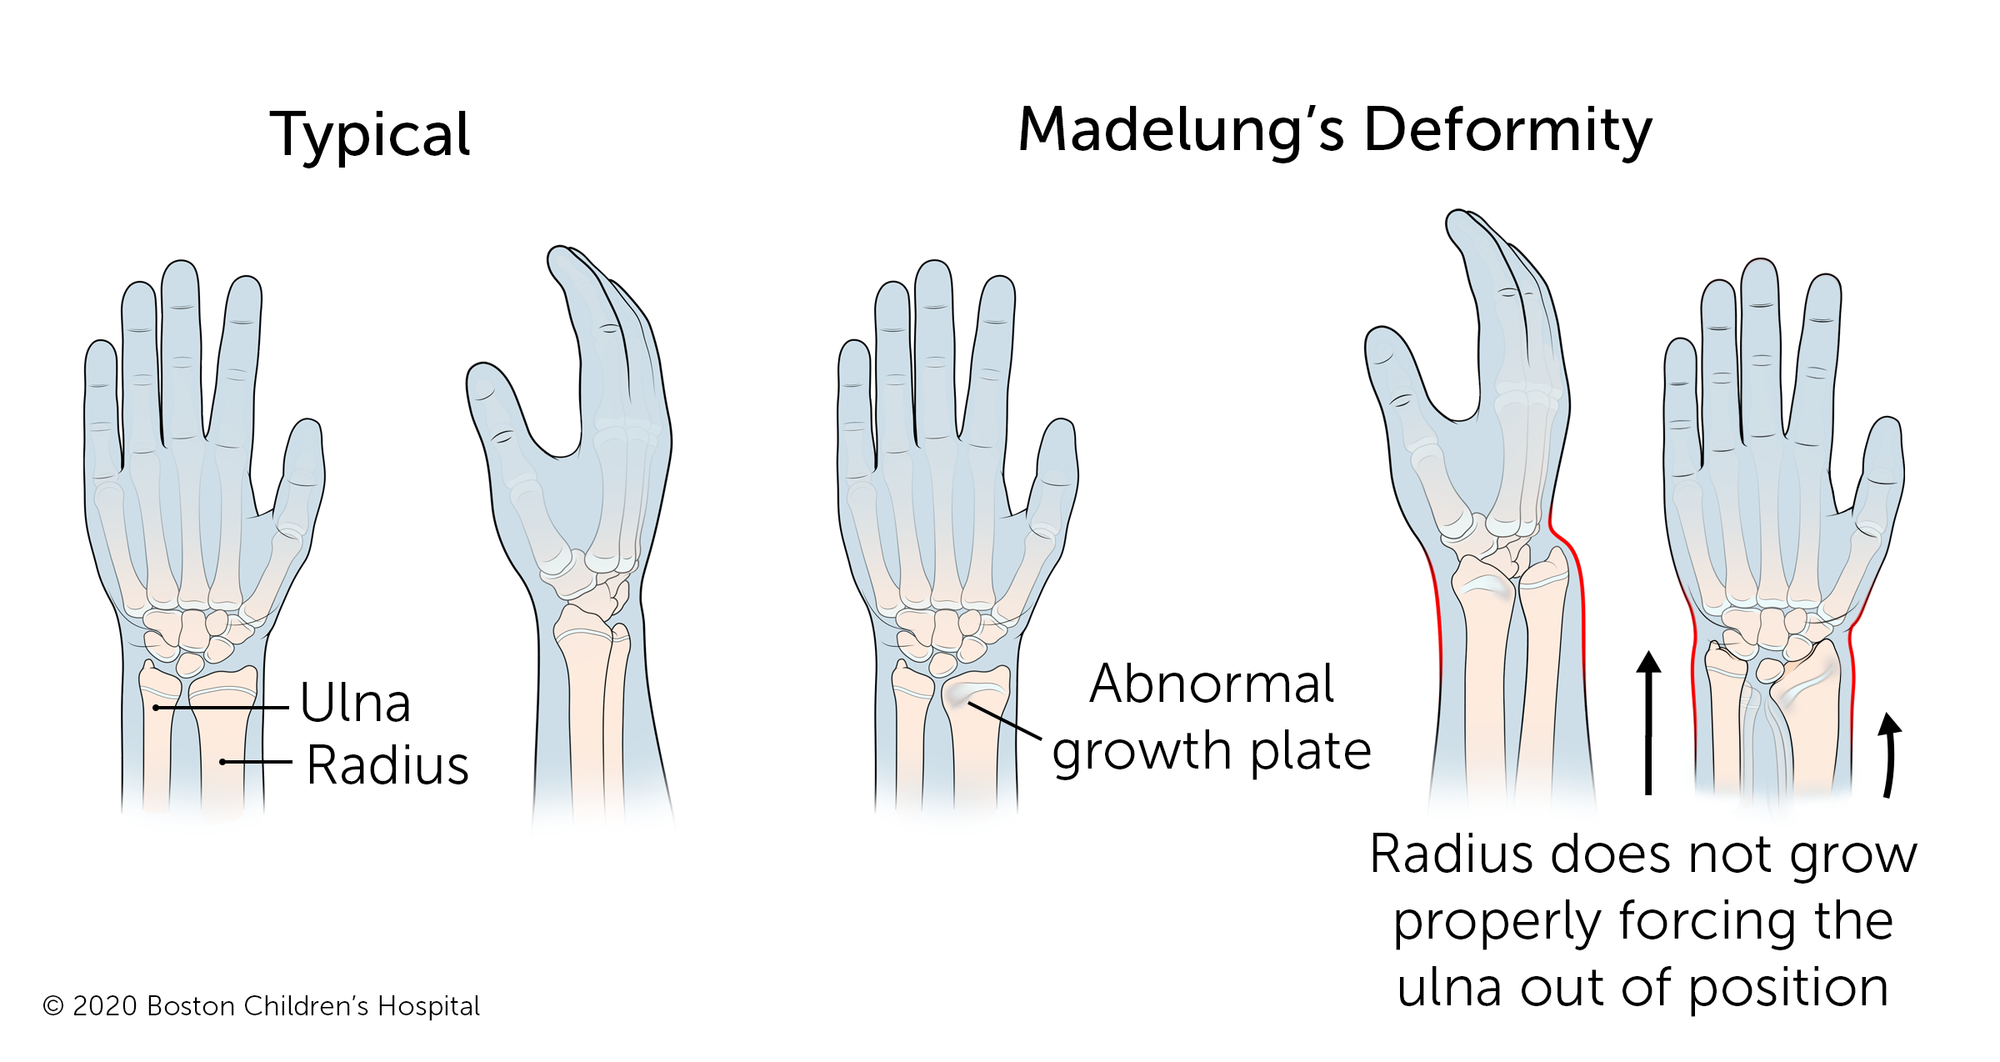 在典型的手臂中，前臂的两个长骨（尺骨和半径）以光滑的线连接到手腕。随着Madelung的畸形，半径异常增长，迫使尺骨脱离位置。